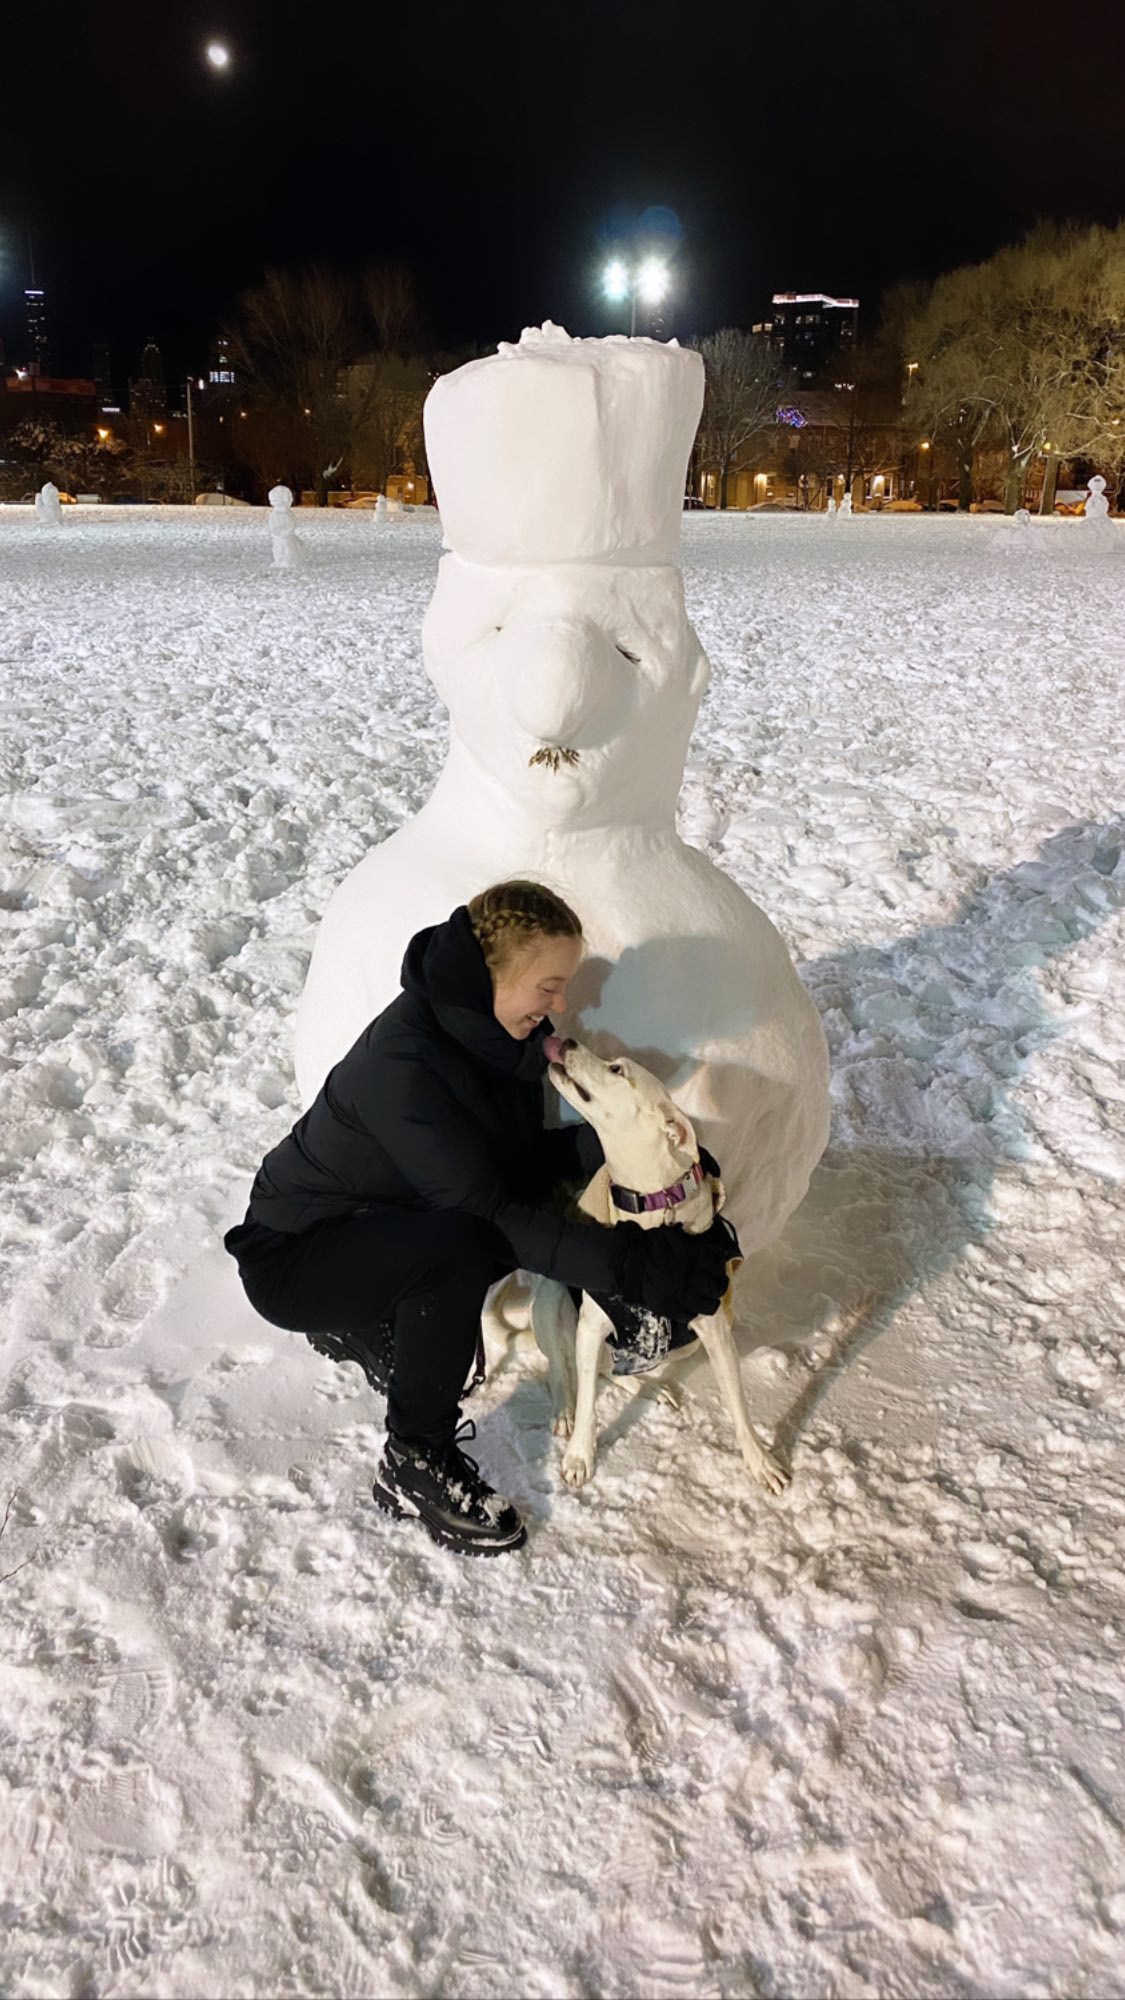 PHOTOS Sydney Sweeney construit une arme de bonhommes de neige! - Photo 5